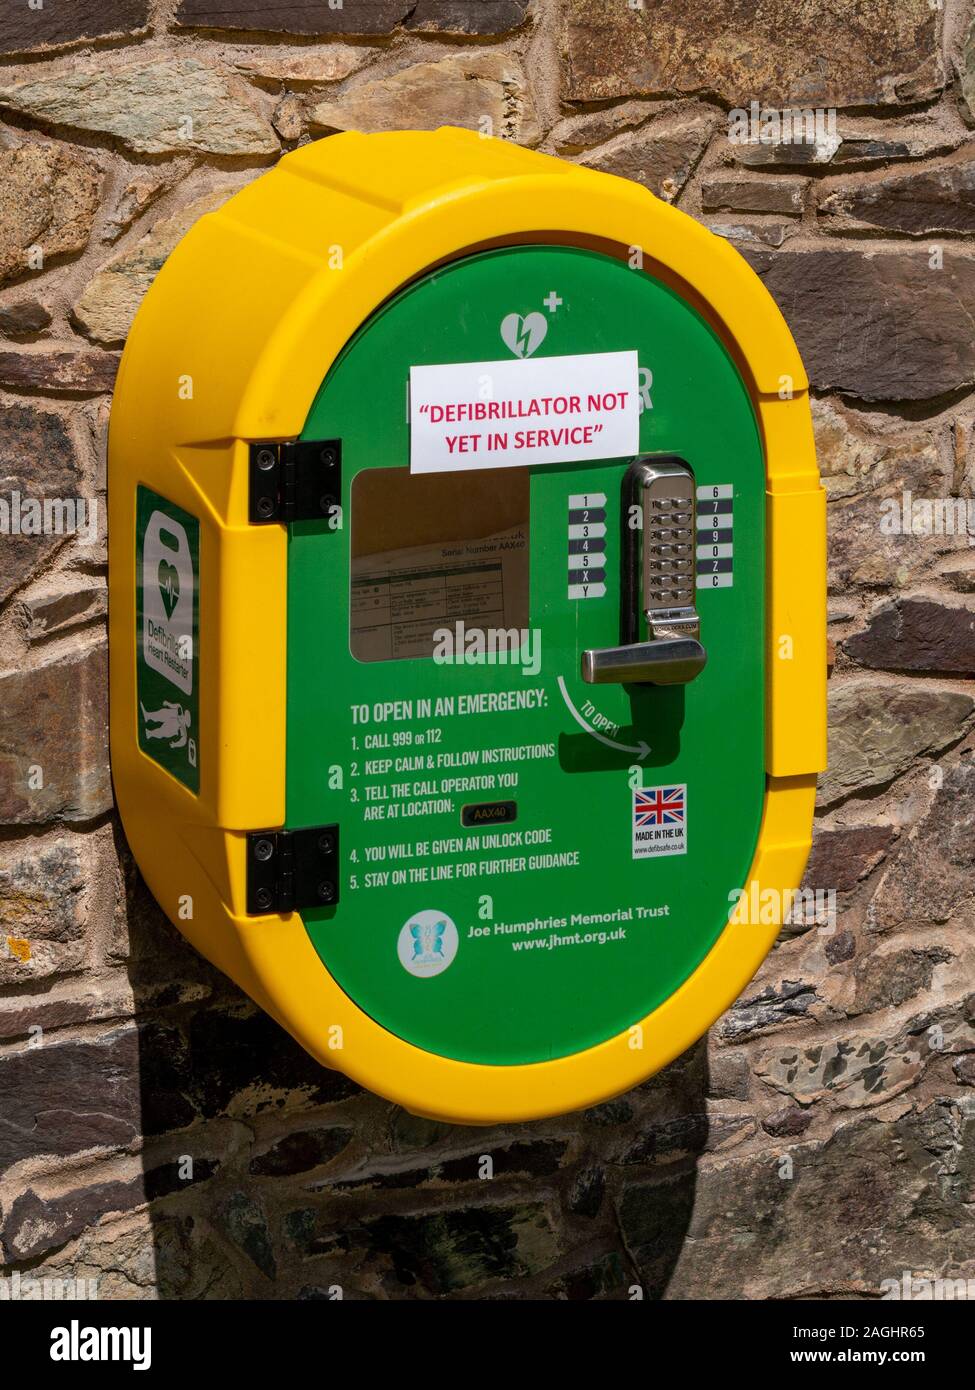 Jaune vif vide nouveau défibrillateur externe automatisé (DEA) le cabinet avec efibrillator «avis Pas encore en service', Bradgate park,Leicestershire,UK Banque D'Images